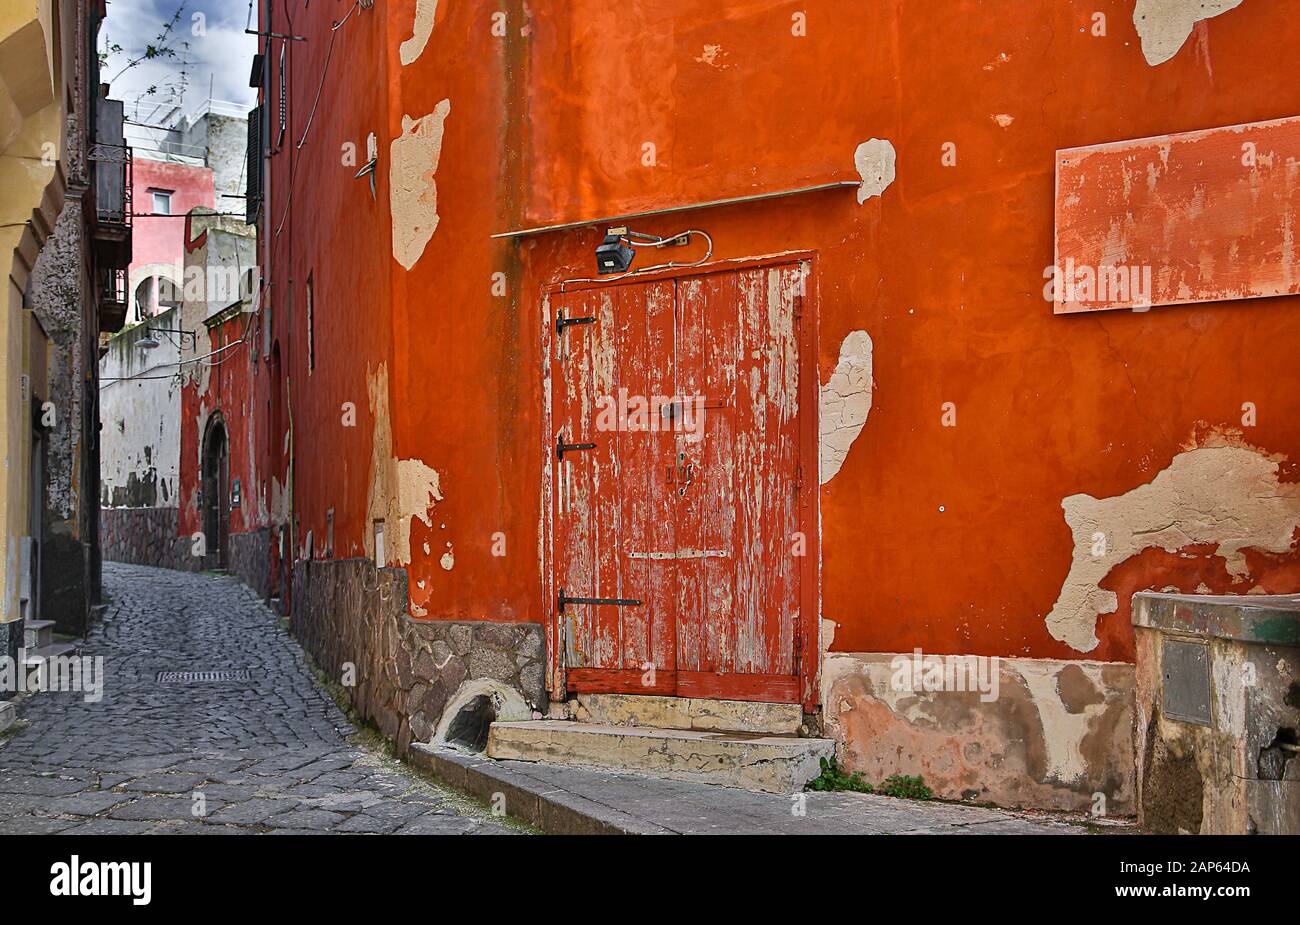 Die alte rote Tür und ihre Umgebung haben ihren eigenen Charme - Procida, Italien. Stockfoto